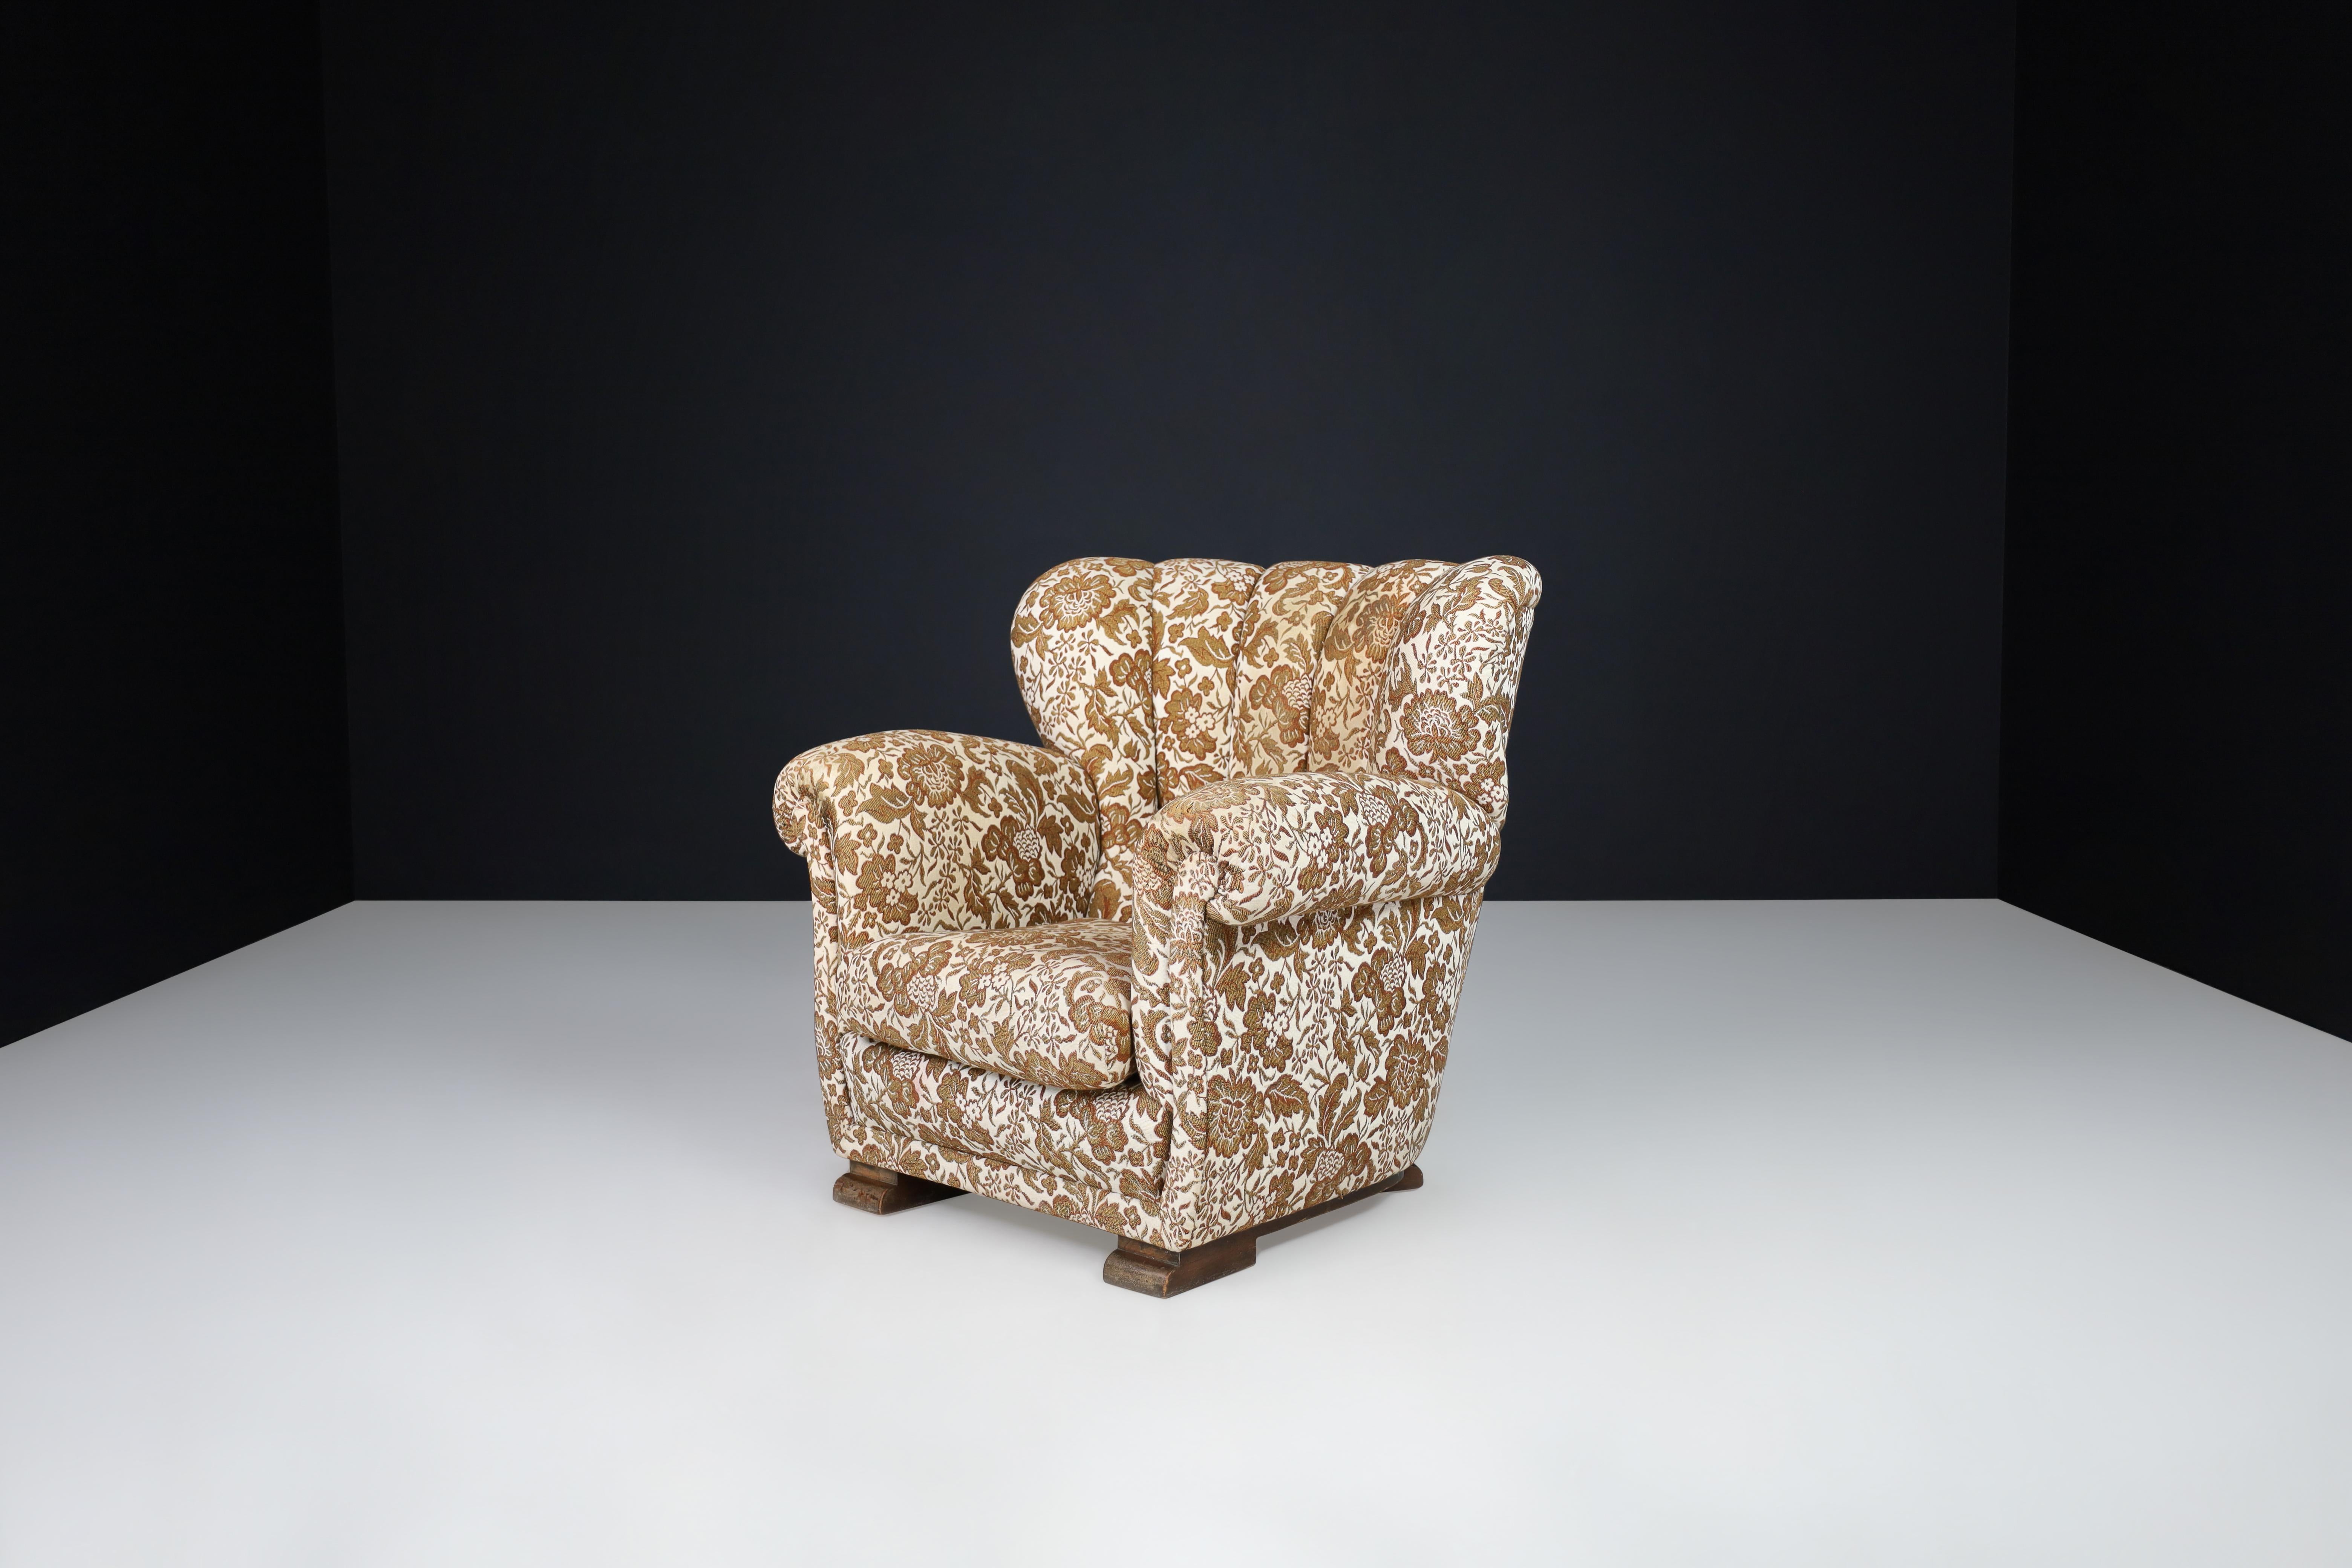 Fauteuil Art Déco en tissu floral d'origine, Praque 1930

Cette chaise longue Art déco en tissu floral a été fabriquée à Prague dans les années 1930. Ses bords doux, ses lignes touffetées et sa conception robuste sont typiques de la période Art